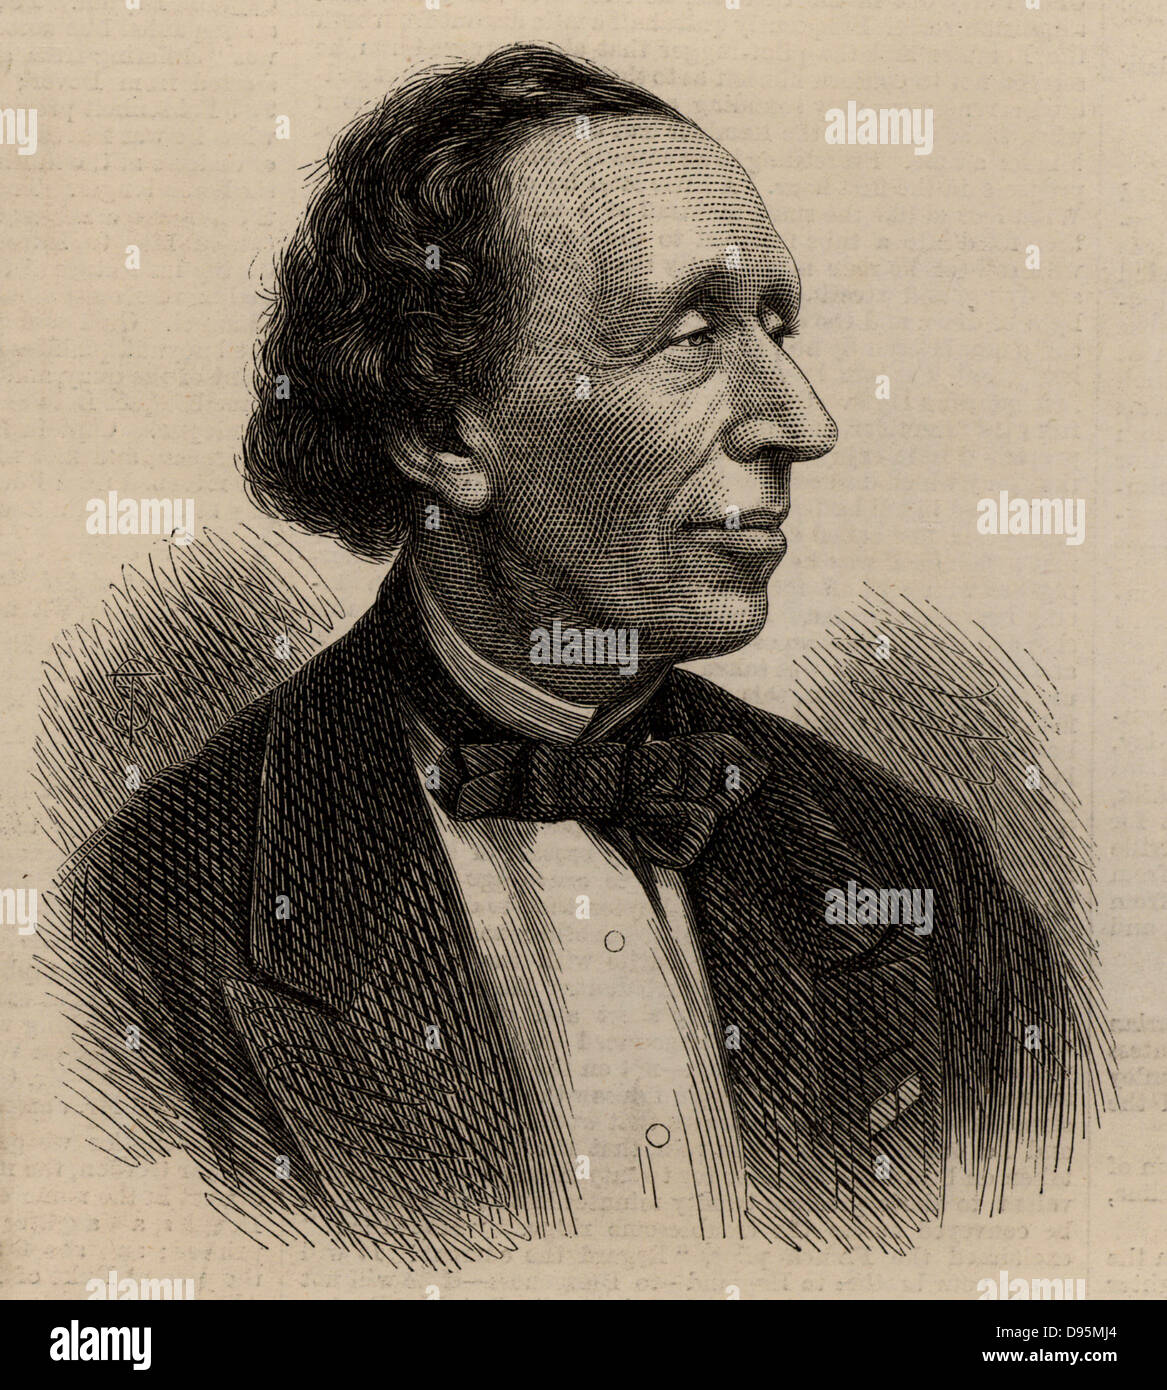 Hans Christian Andersen (1805-1875) autore danese e cantastorie, ricordata soprattutto per le sue fiabe. Incisione. Foto Stock